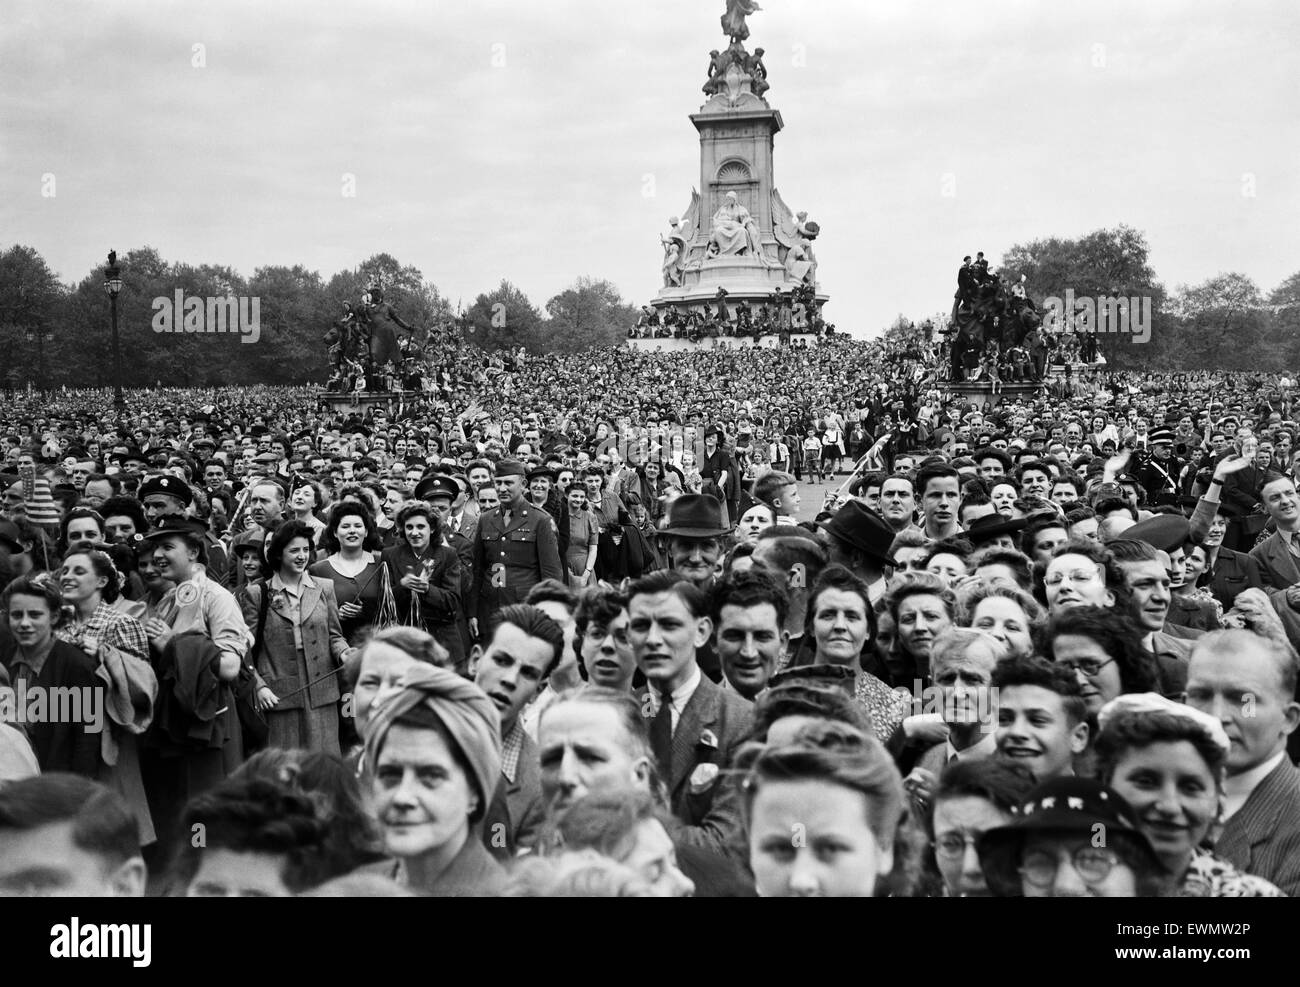 VE Day Feierlichkeiten in London am Ende des zweiten Weltkriegs.  Riesige Menschenmengen versammelten sich außerhalb Buckingham Palast während der Feierlichkeiten.  8. Mai 1945. Stockfoto